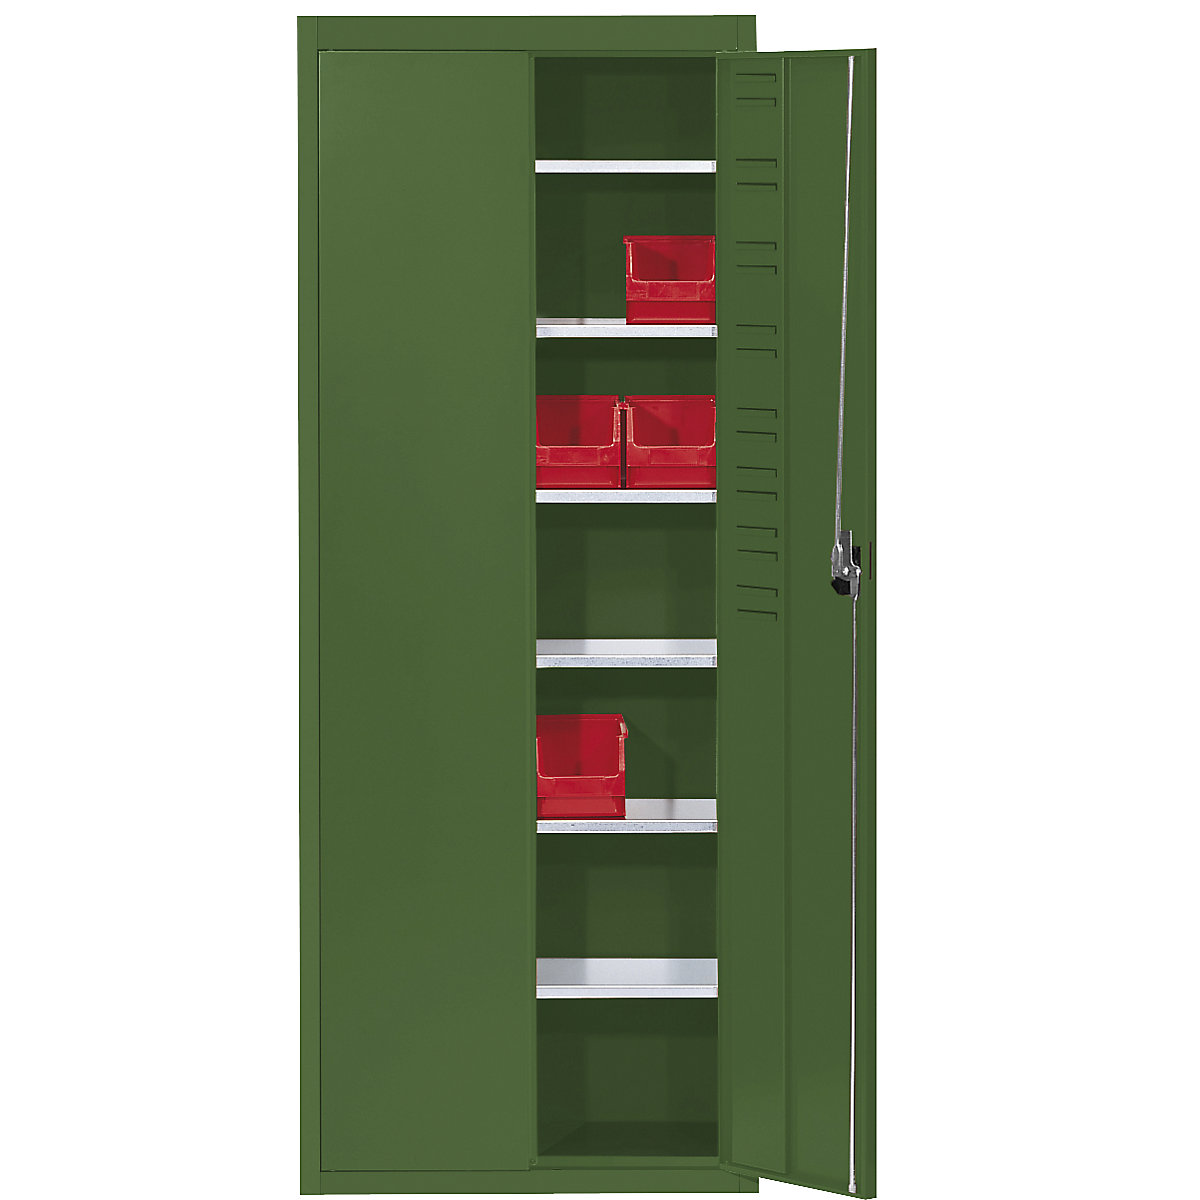 Skladiščna omara, brez odprtih skladiščnih posod – mauser, VxŠxG 1740 x 680 x 280 mm, ena barva, reseda zelene barve, od 3 kosov-10